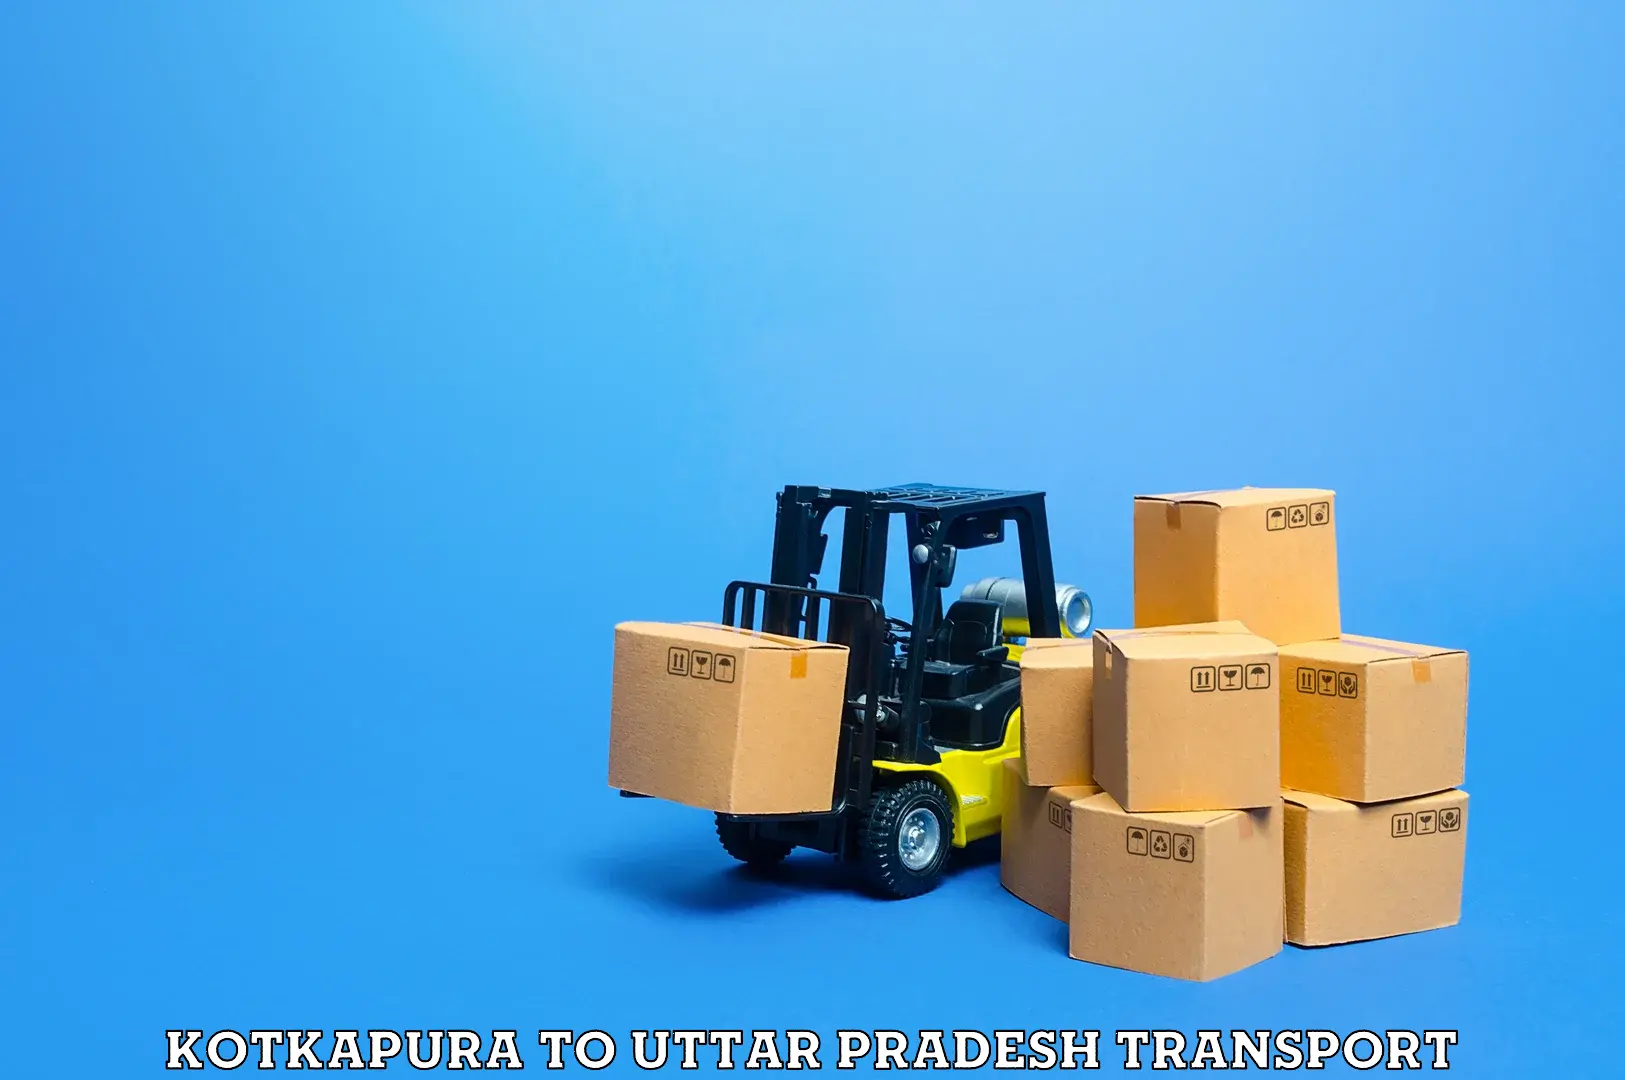 Transport in sharing Kotkapura to Prayagraj